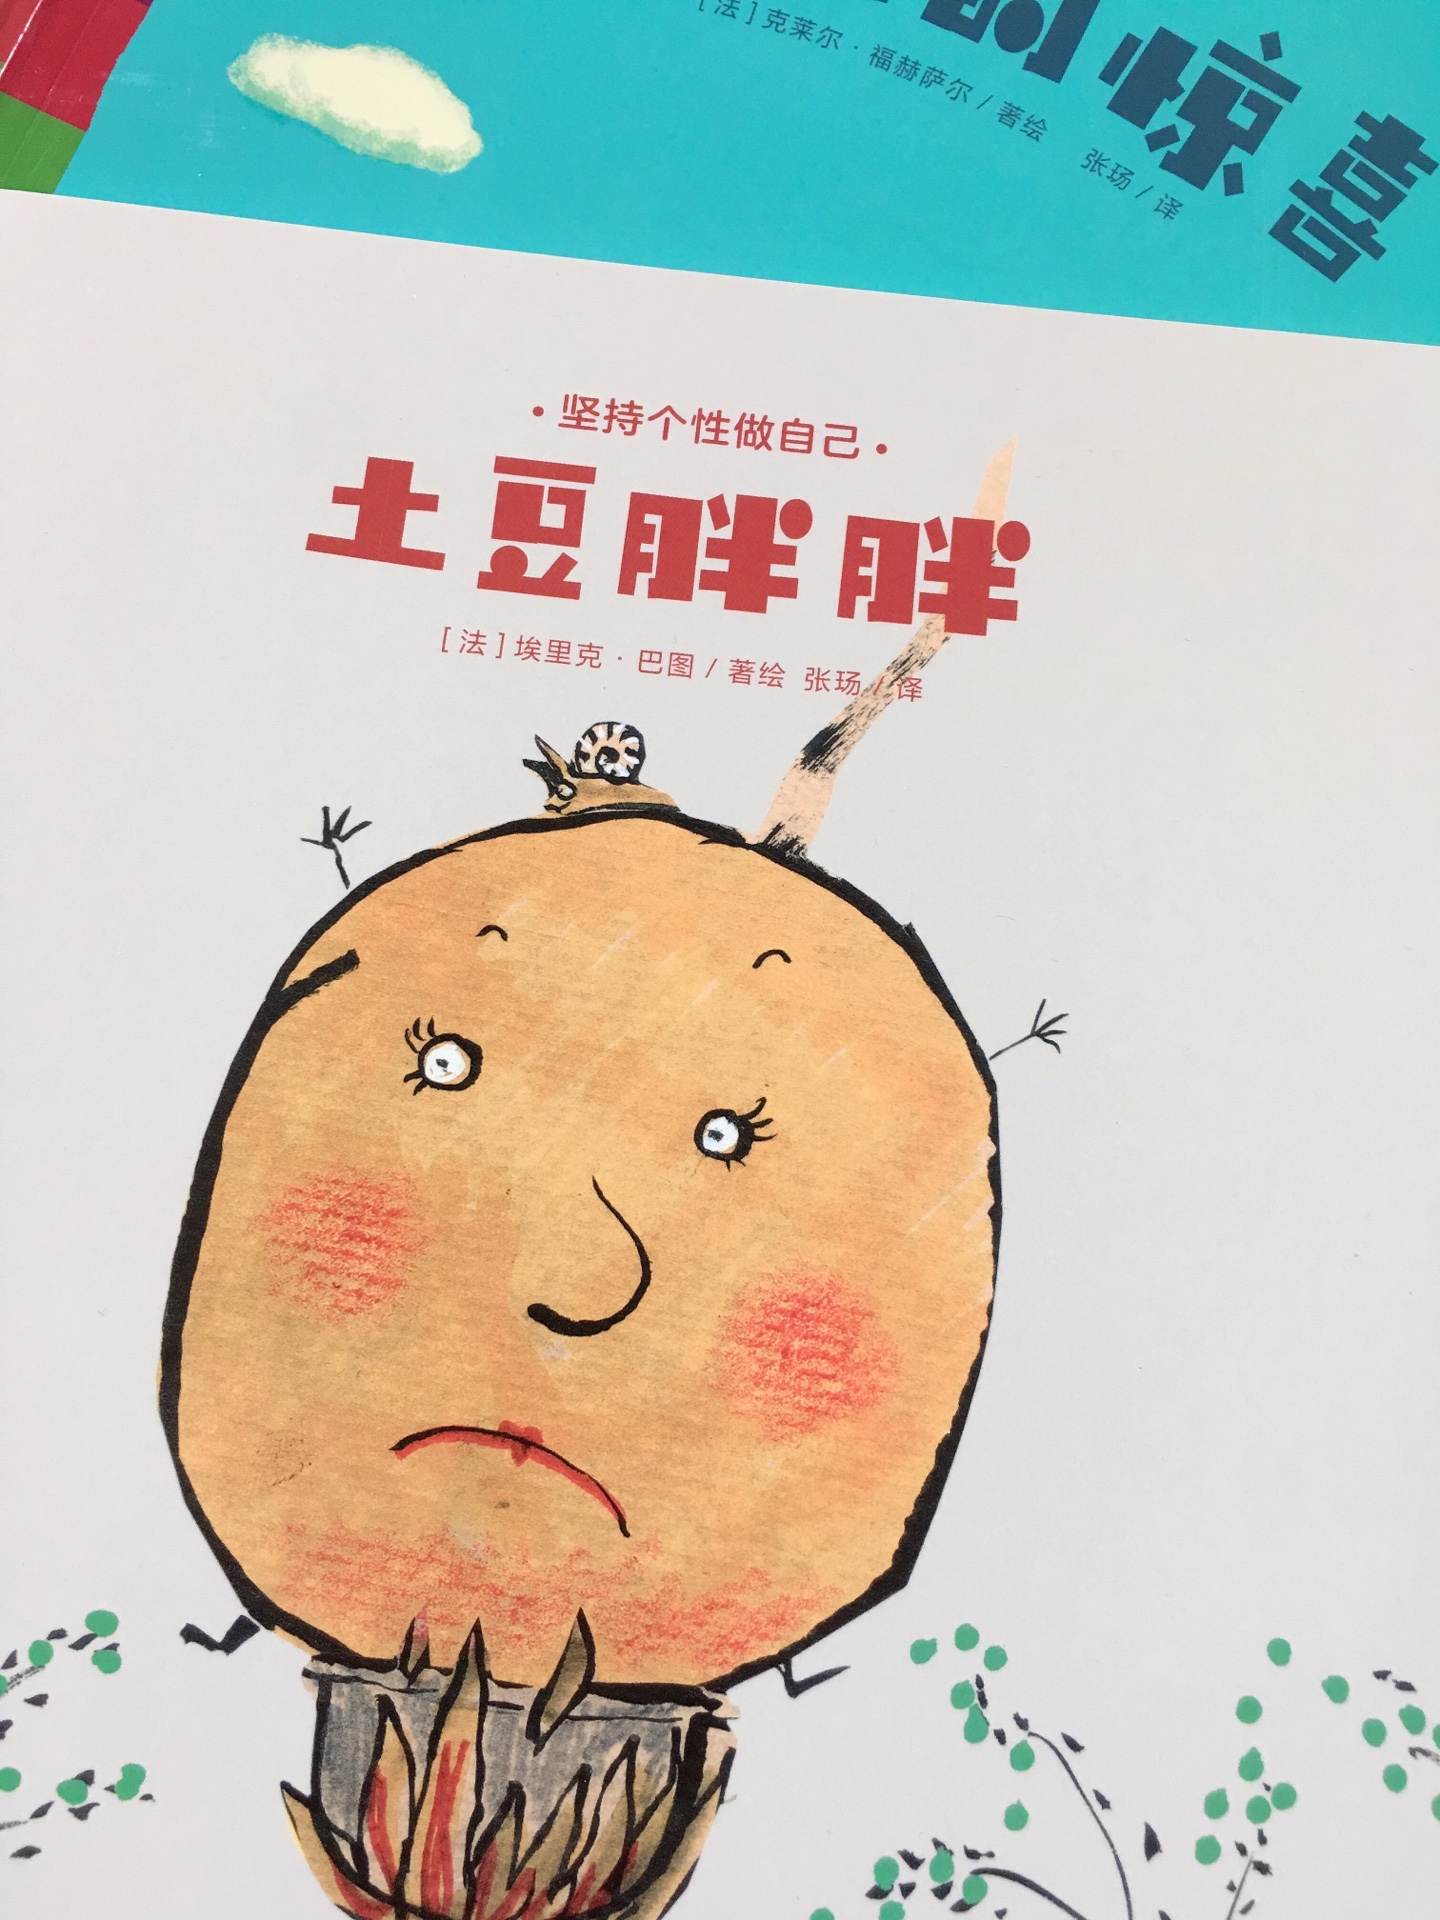 这套书的一本土豆胖胖实在太傻了，讲的是一个男人向一个胖土豆求婚，一个人和一个土豆从此过上了幸福的生活，真是醉了，对这个作者简直无语，买的最失败的书，打算扔了。。。